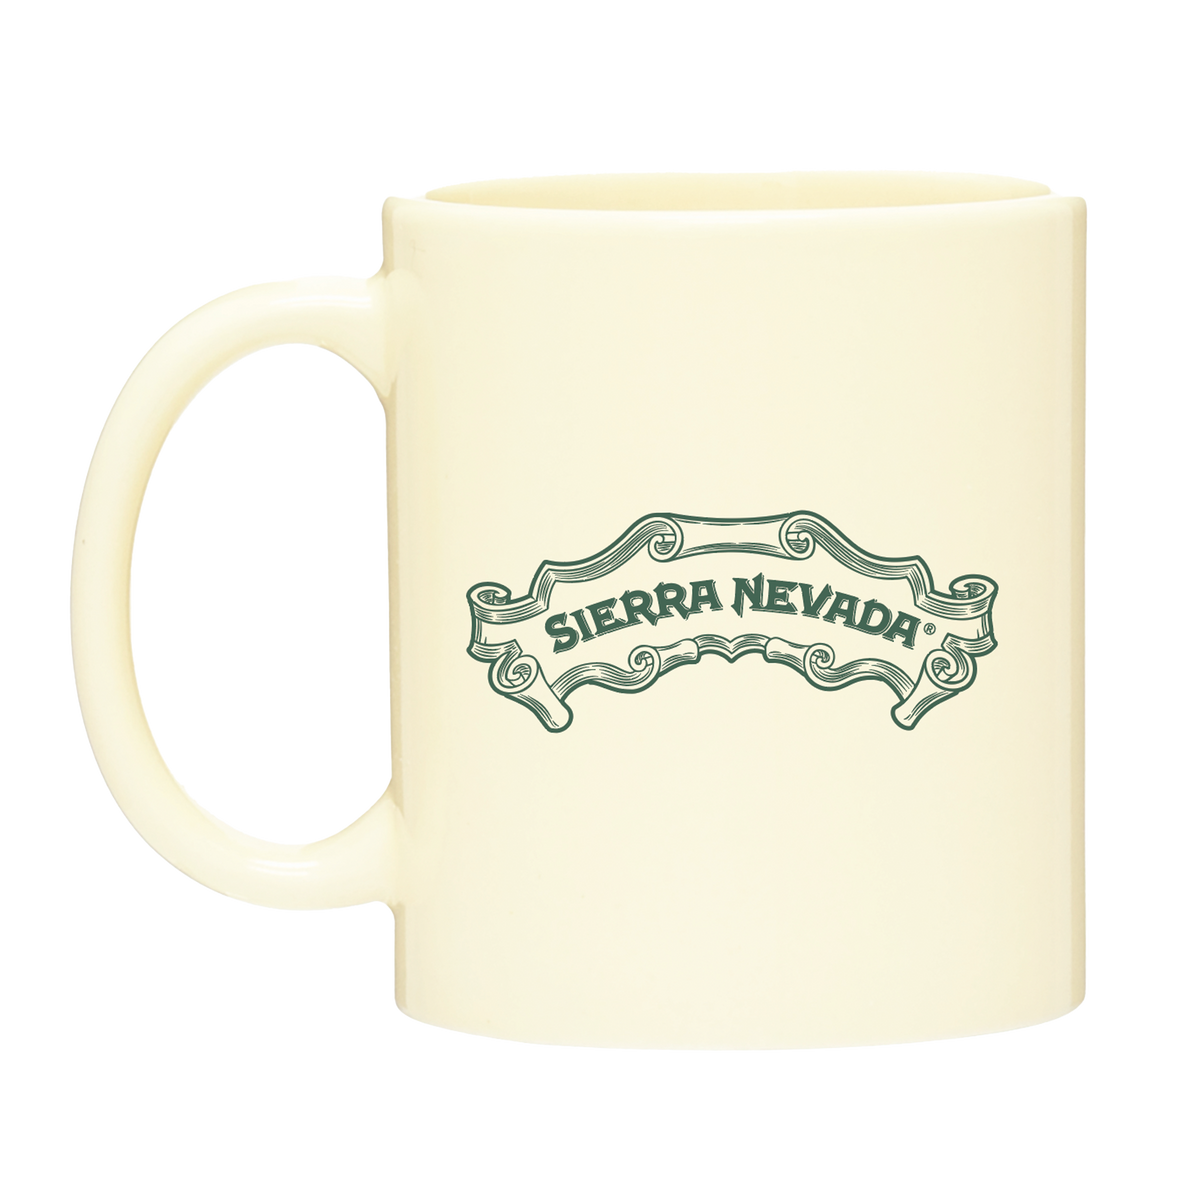 Sierra Nevada Brewing Co. Retro Coffee Mug - back side